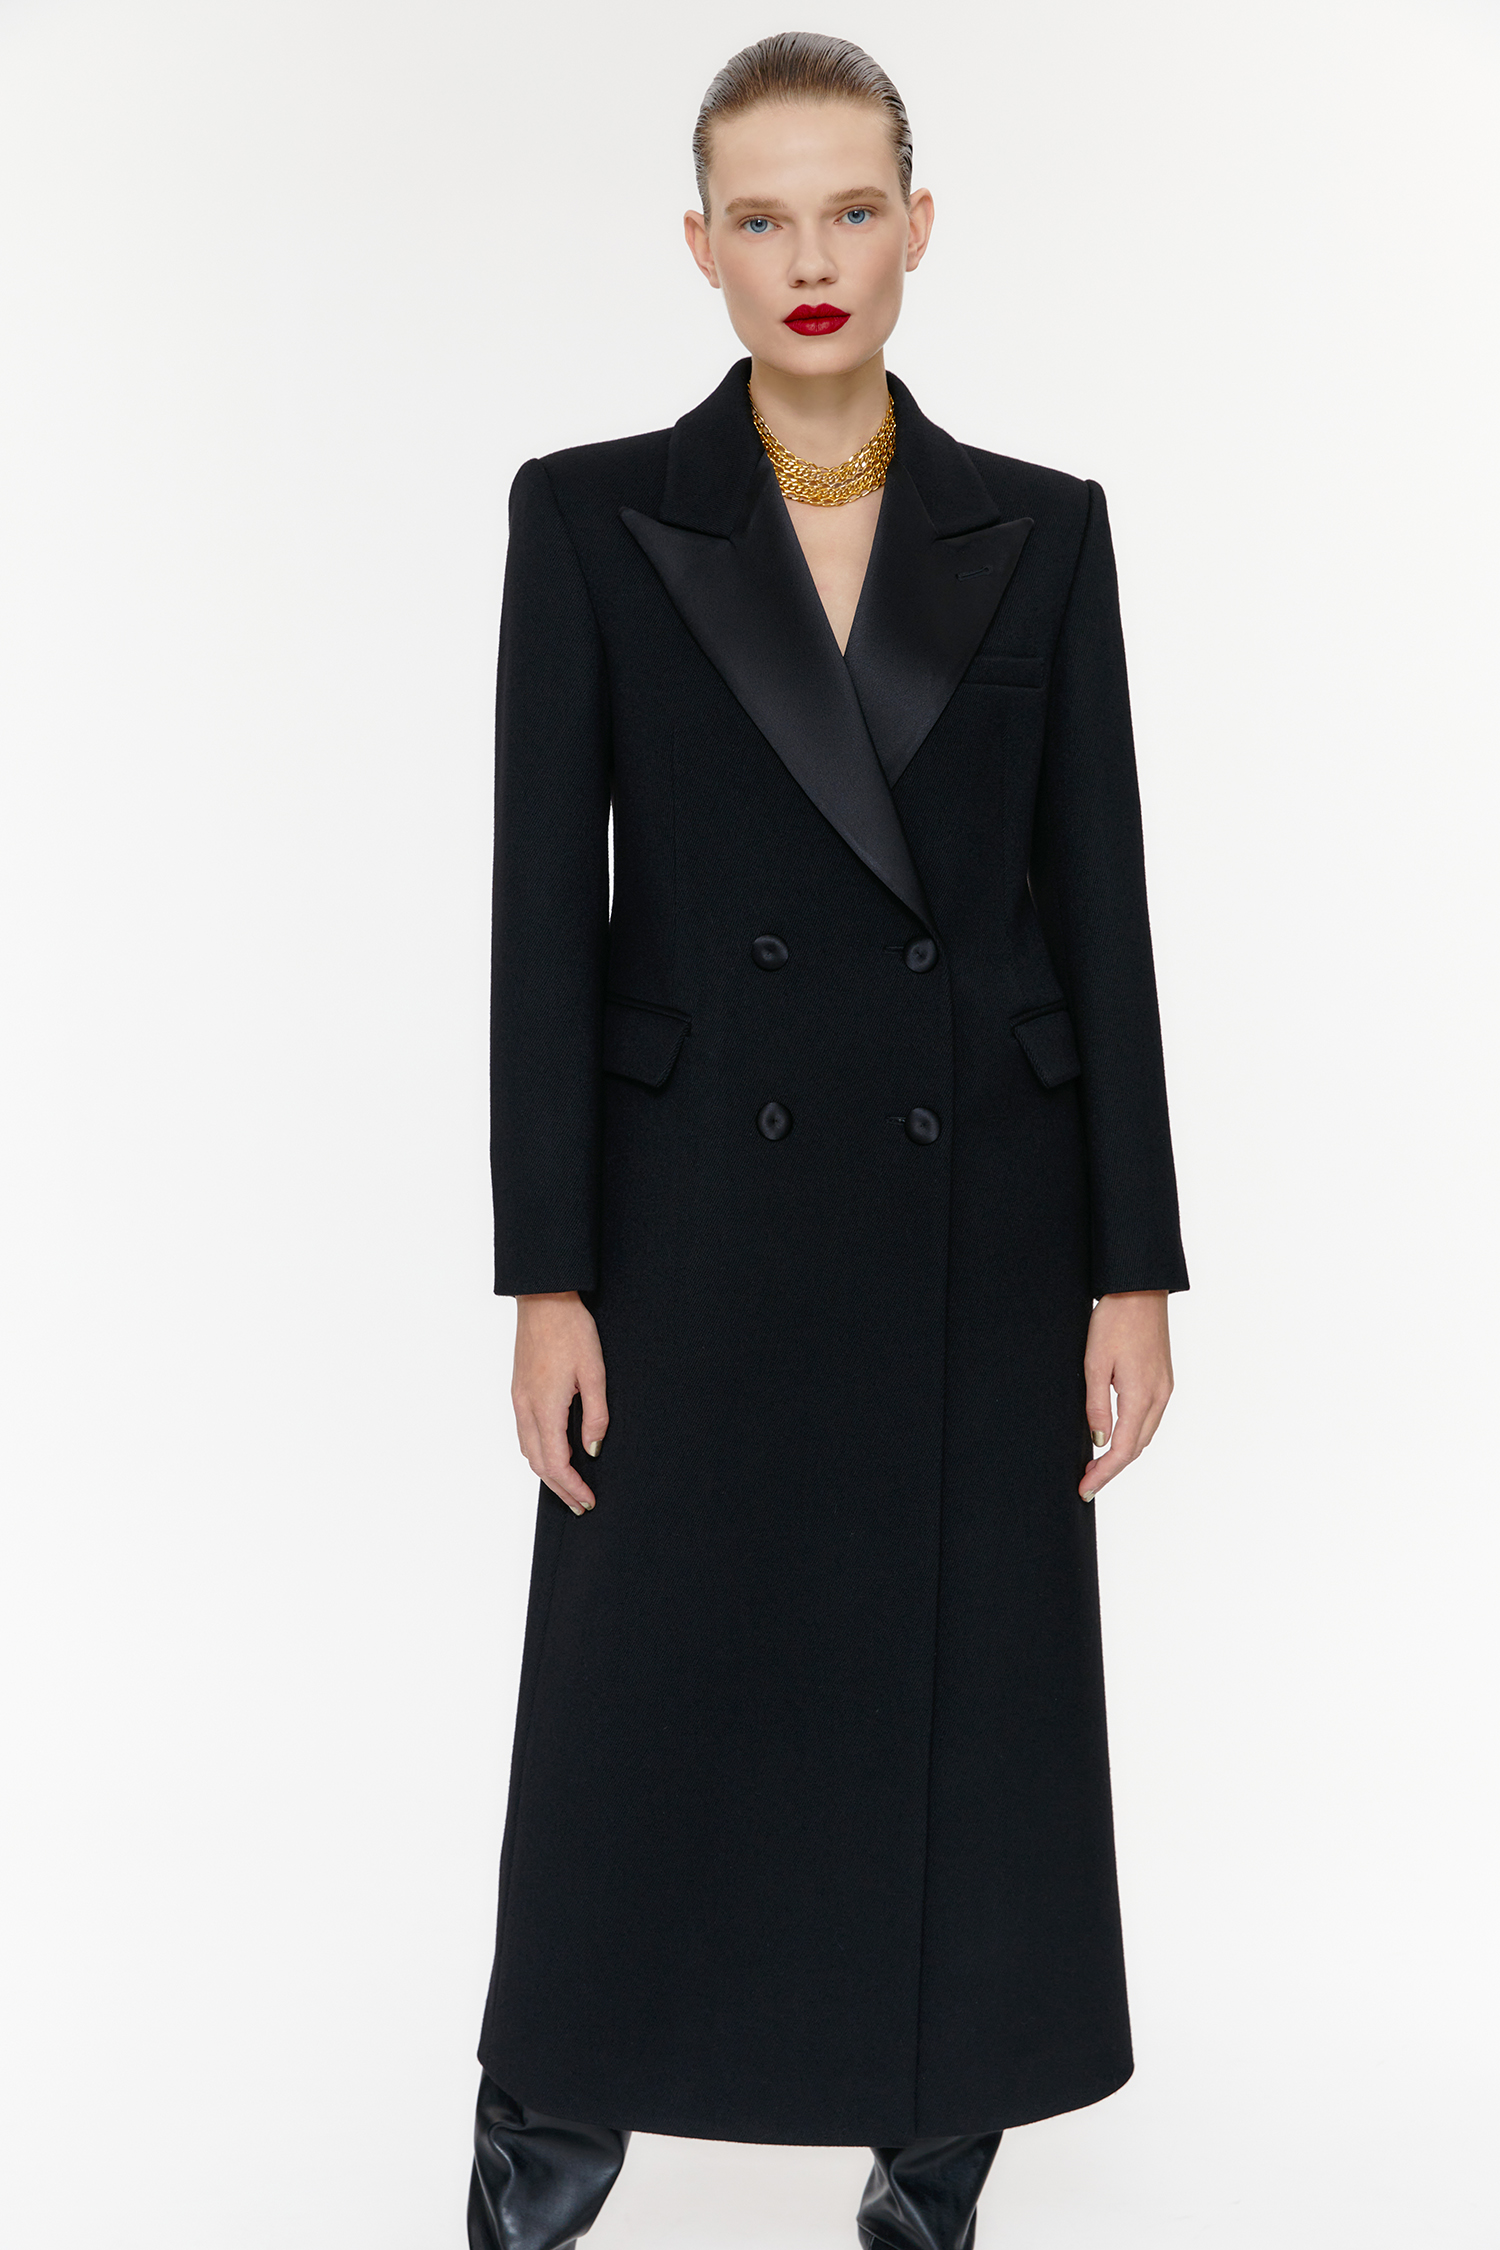 [Custom Order]  Royal Tailored Tuxedo Coat